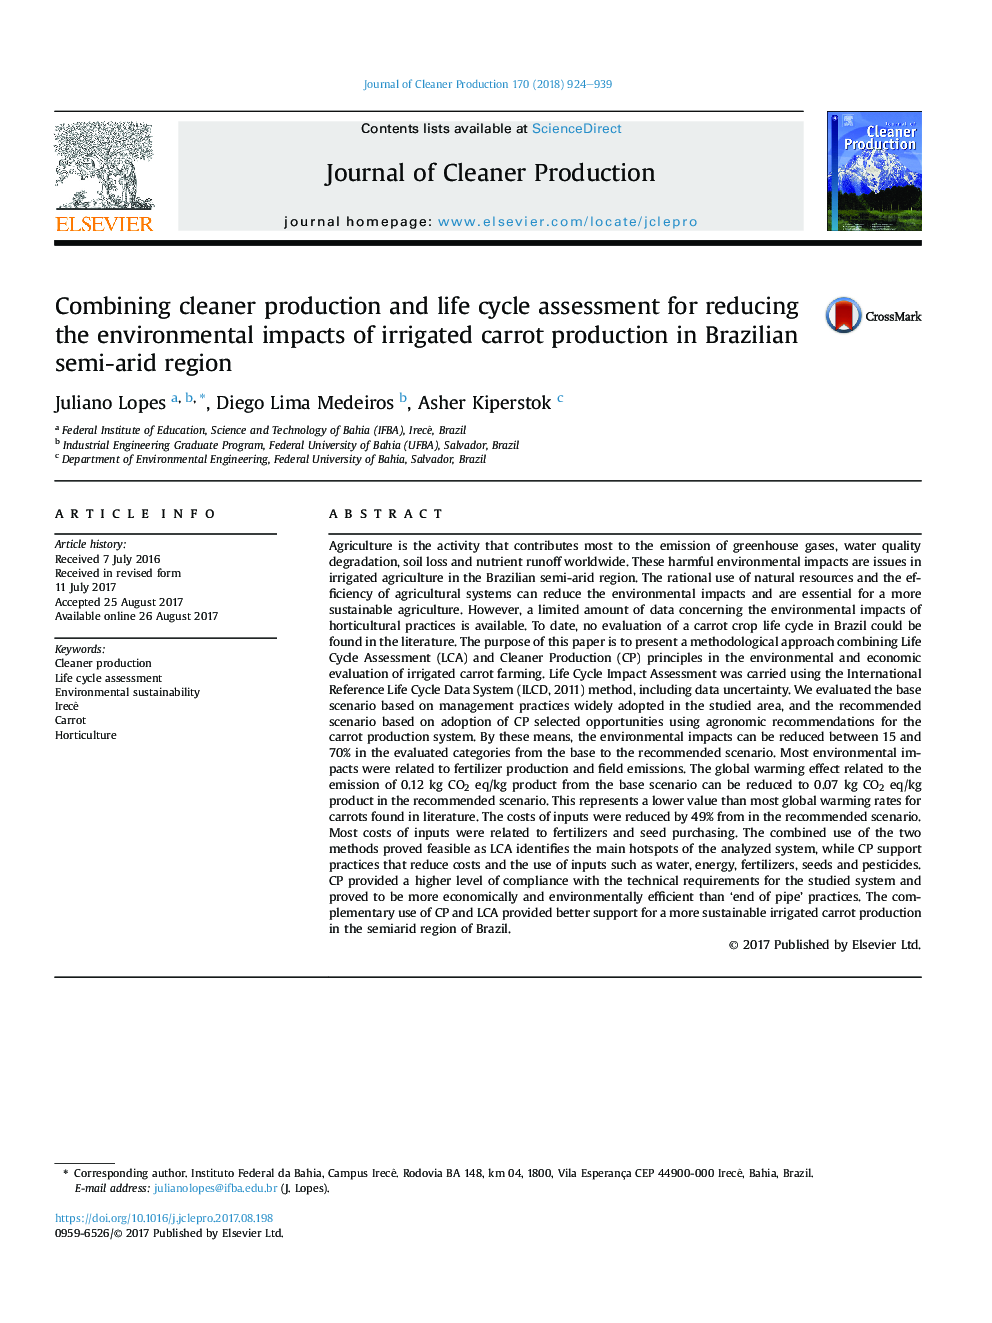 ترکیبی از ارزیابی چرخه تولید و چرخه زندگی برای کاهش اثرات زیست محیطی تولید هویج آبی در مناطق نیمه خشک برزیل